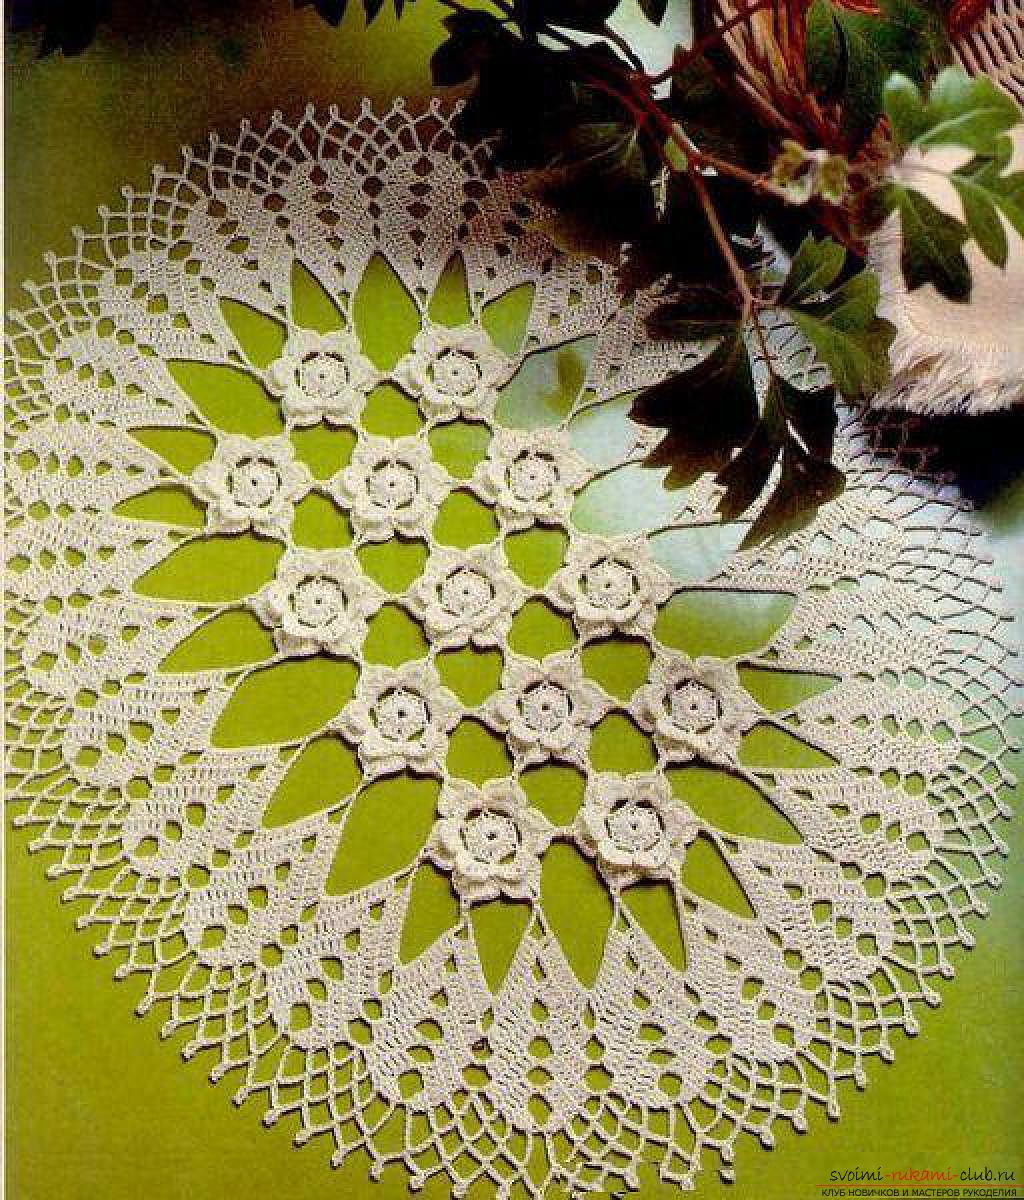 crocheted beautiful patterns. Photo # 2